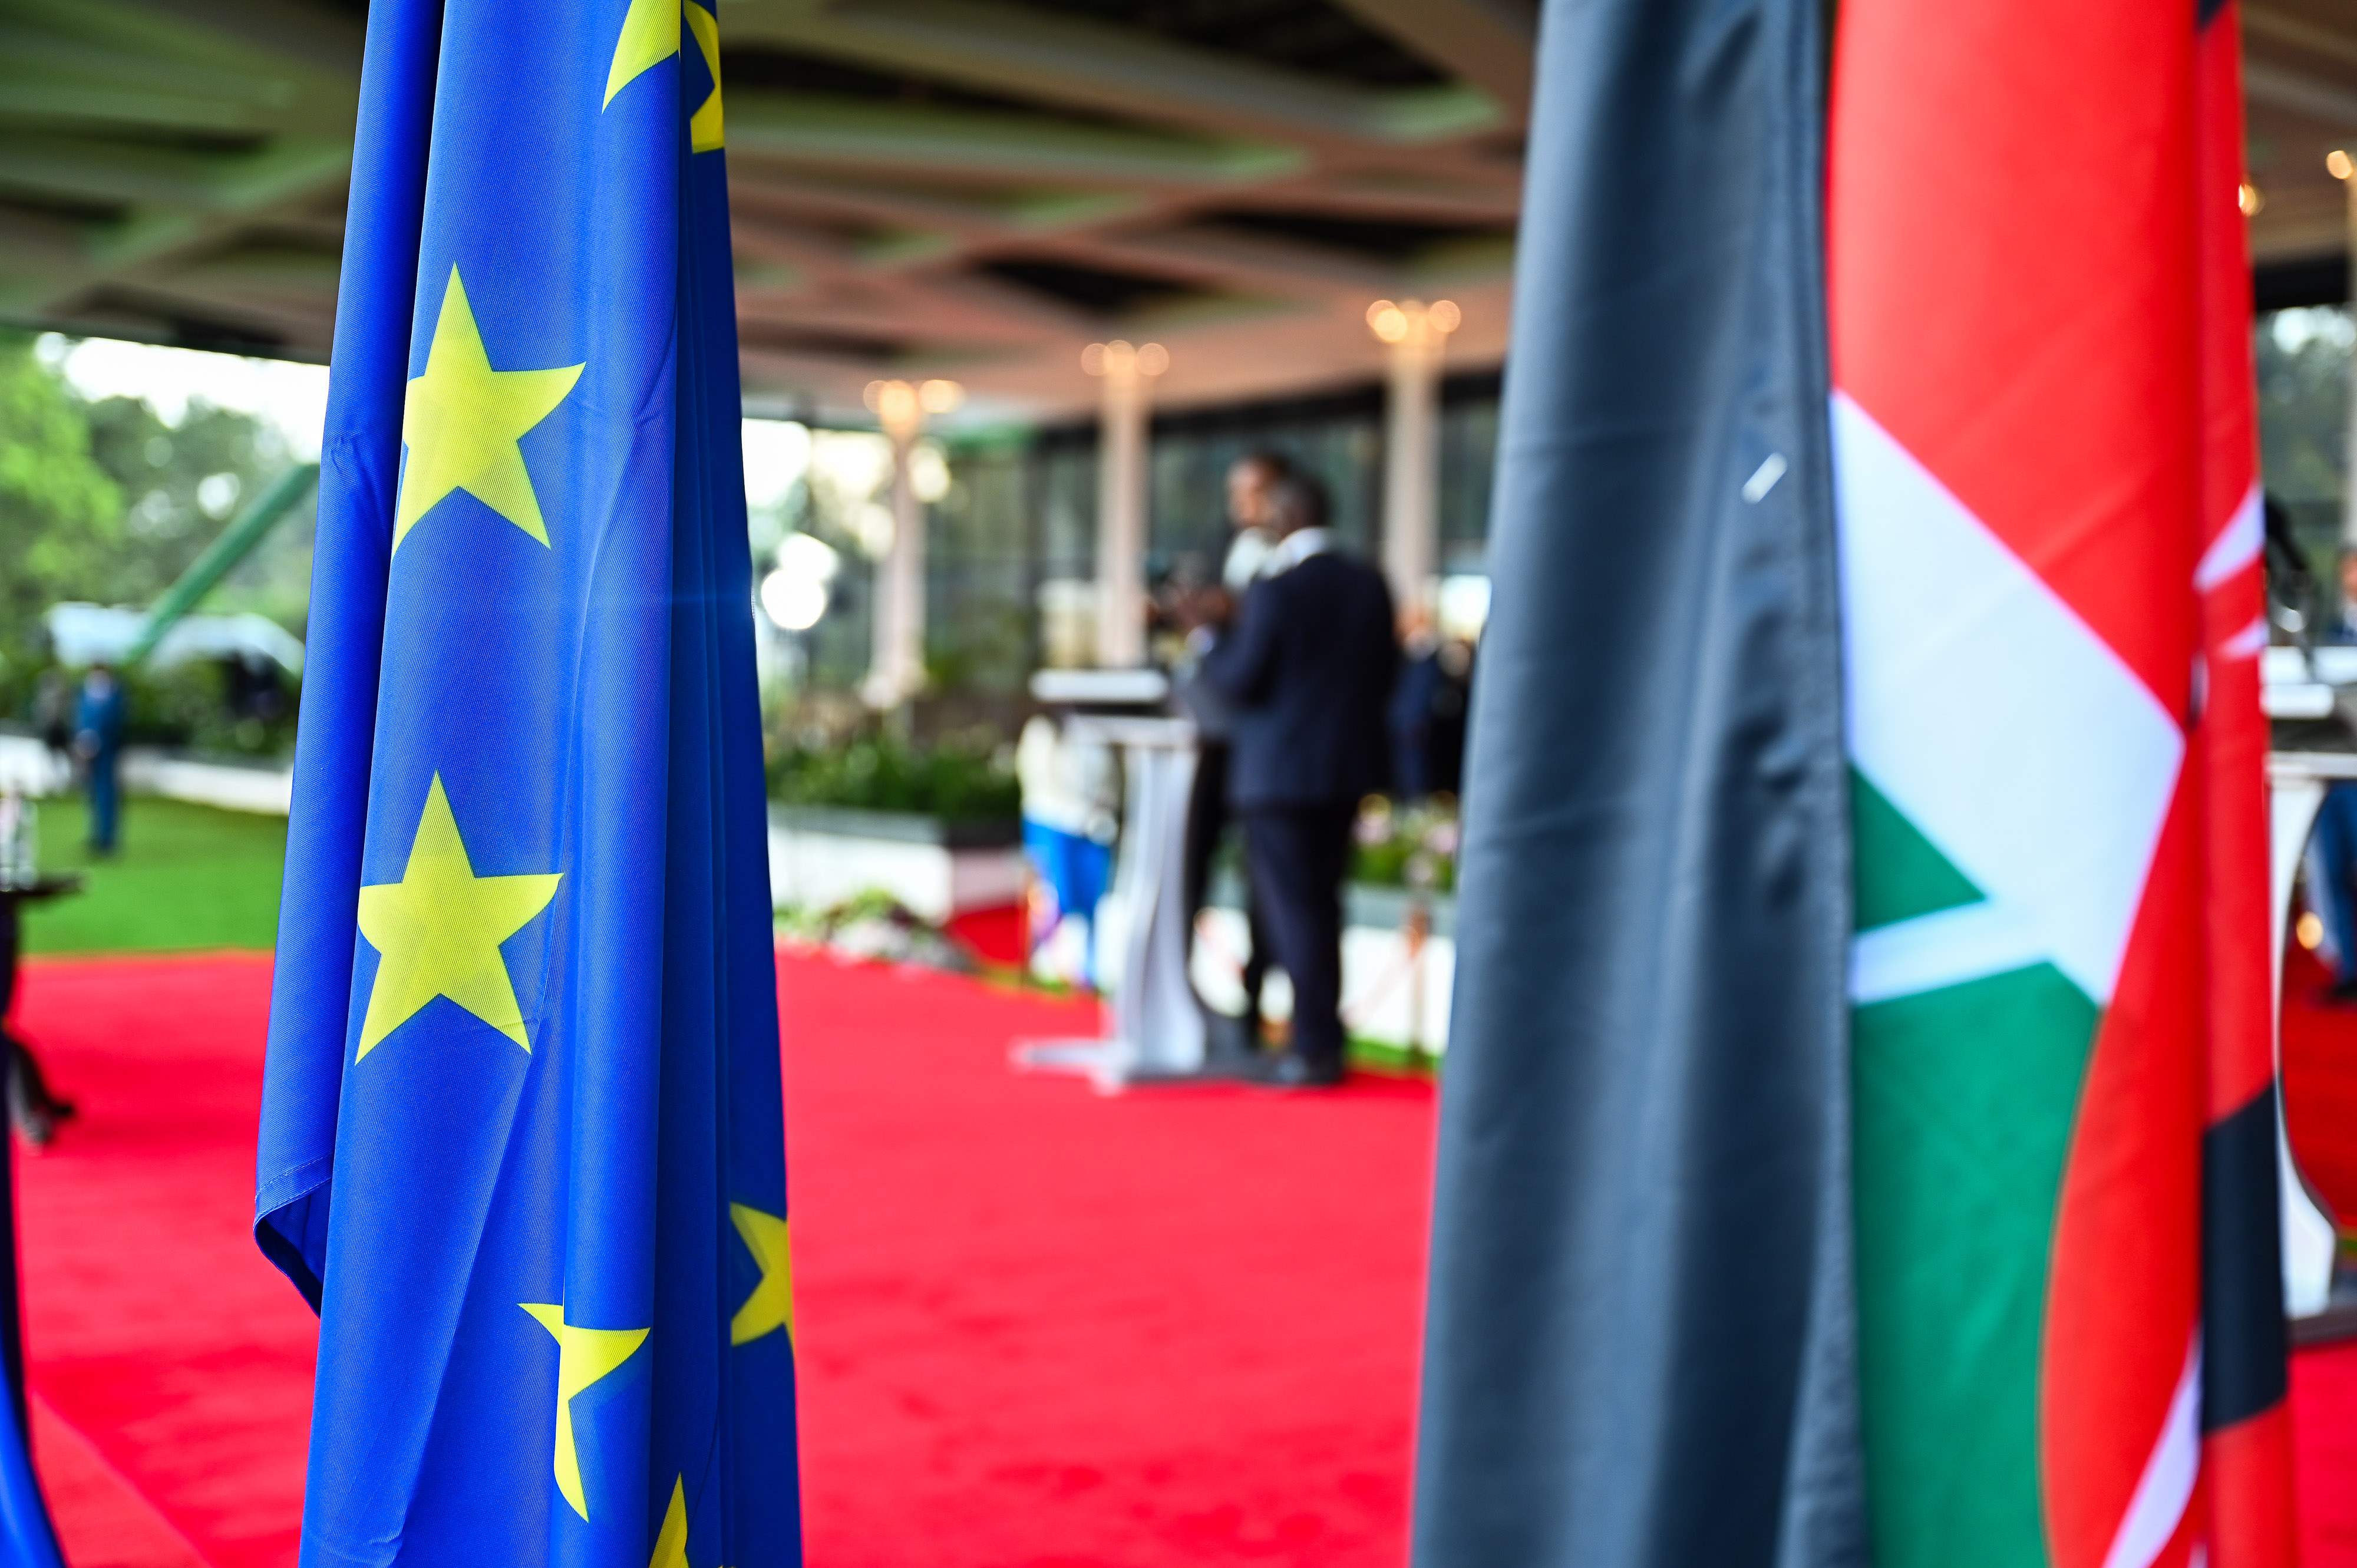 Im Vordergrund ist links die Flagge der Europäischen Union. Rechts ist die Flagge des Landes Kenia. Im Hintergrund stehen zwei Personen auf einem roten Teppich